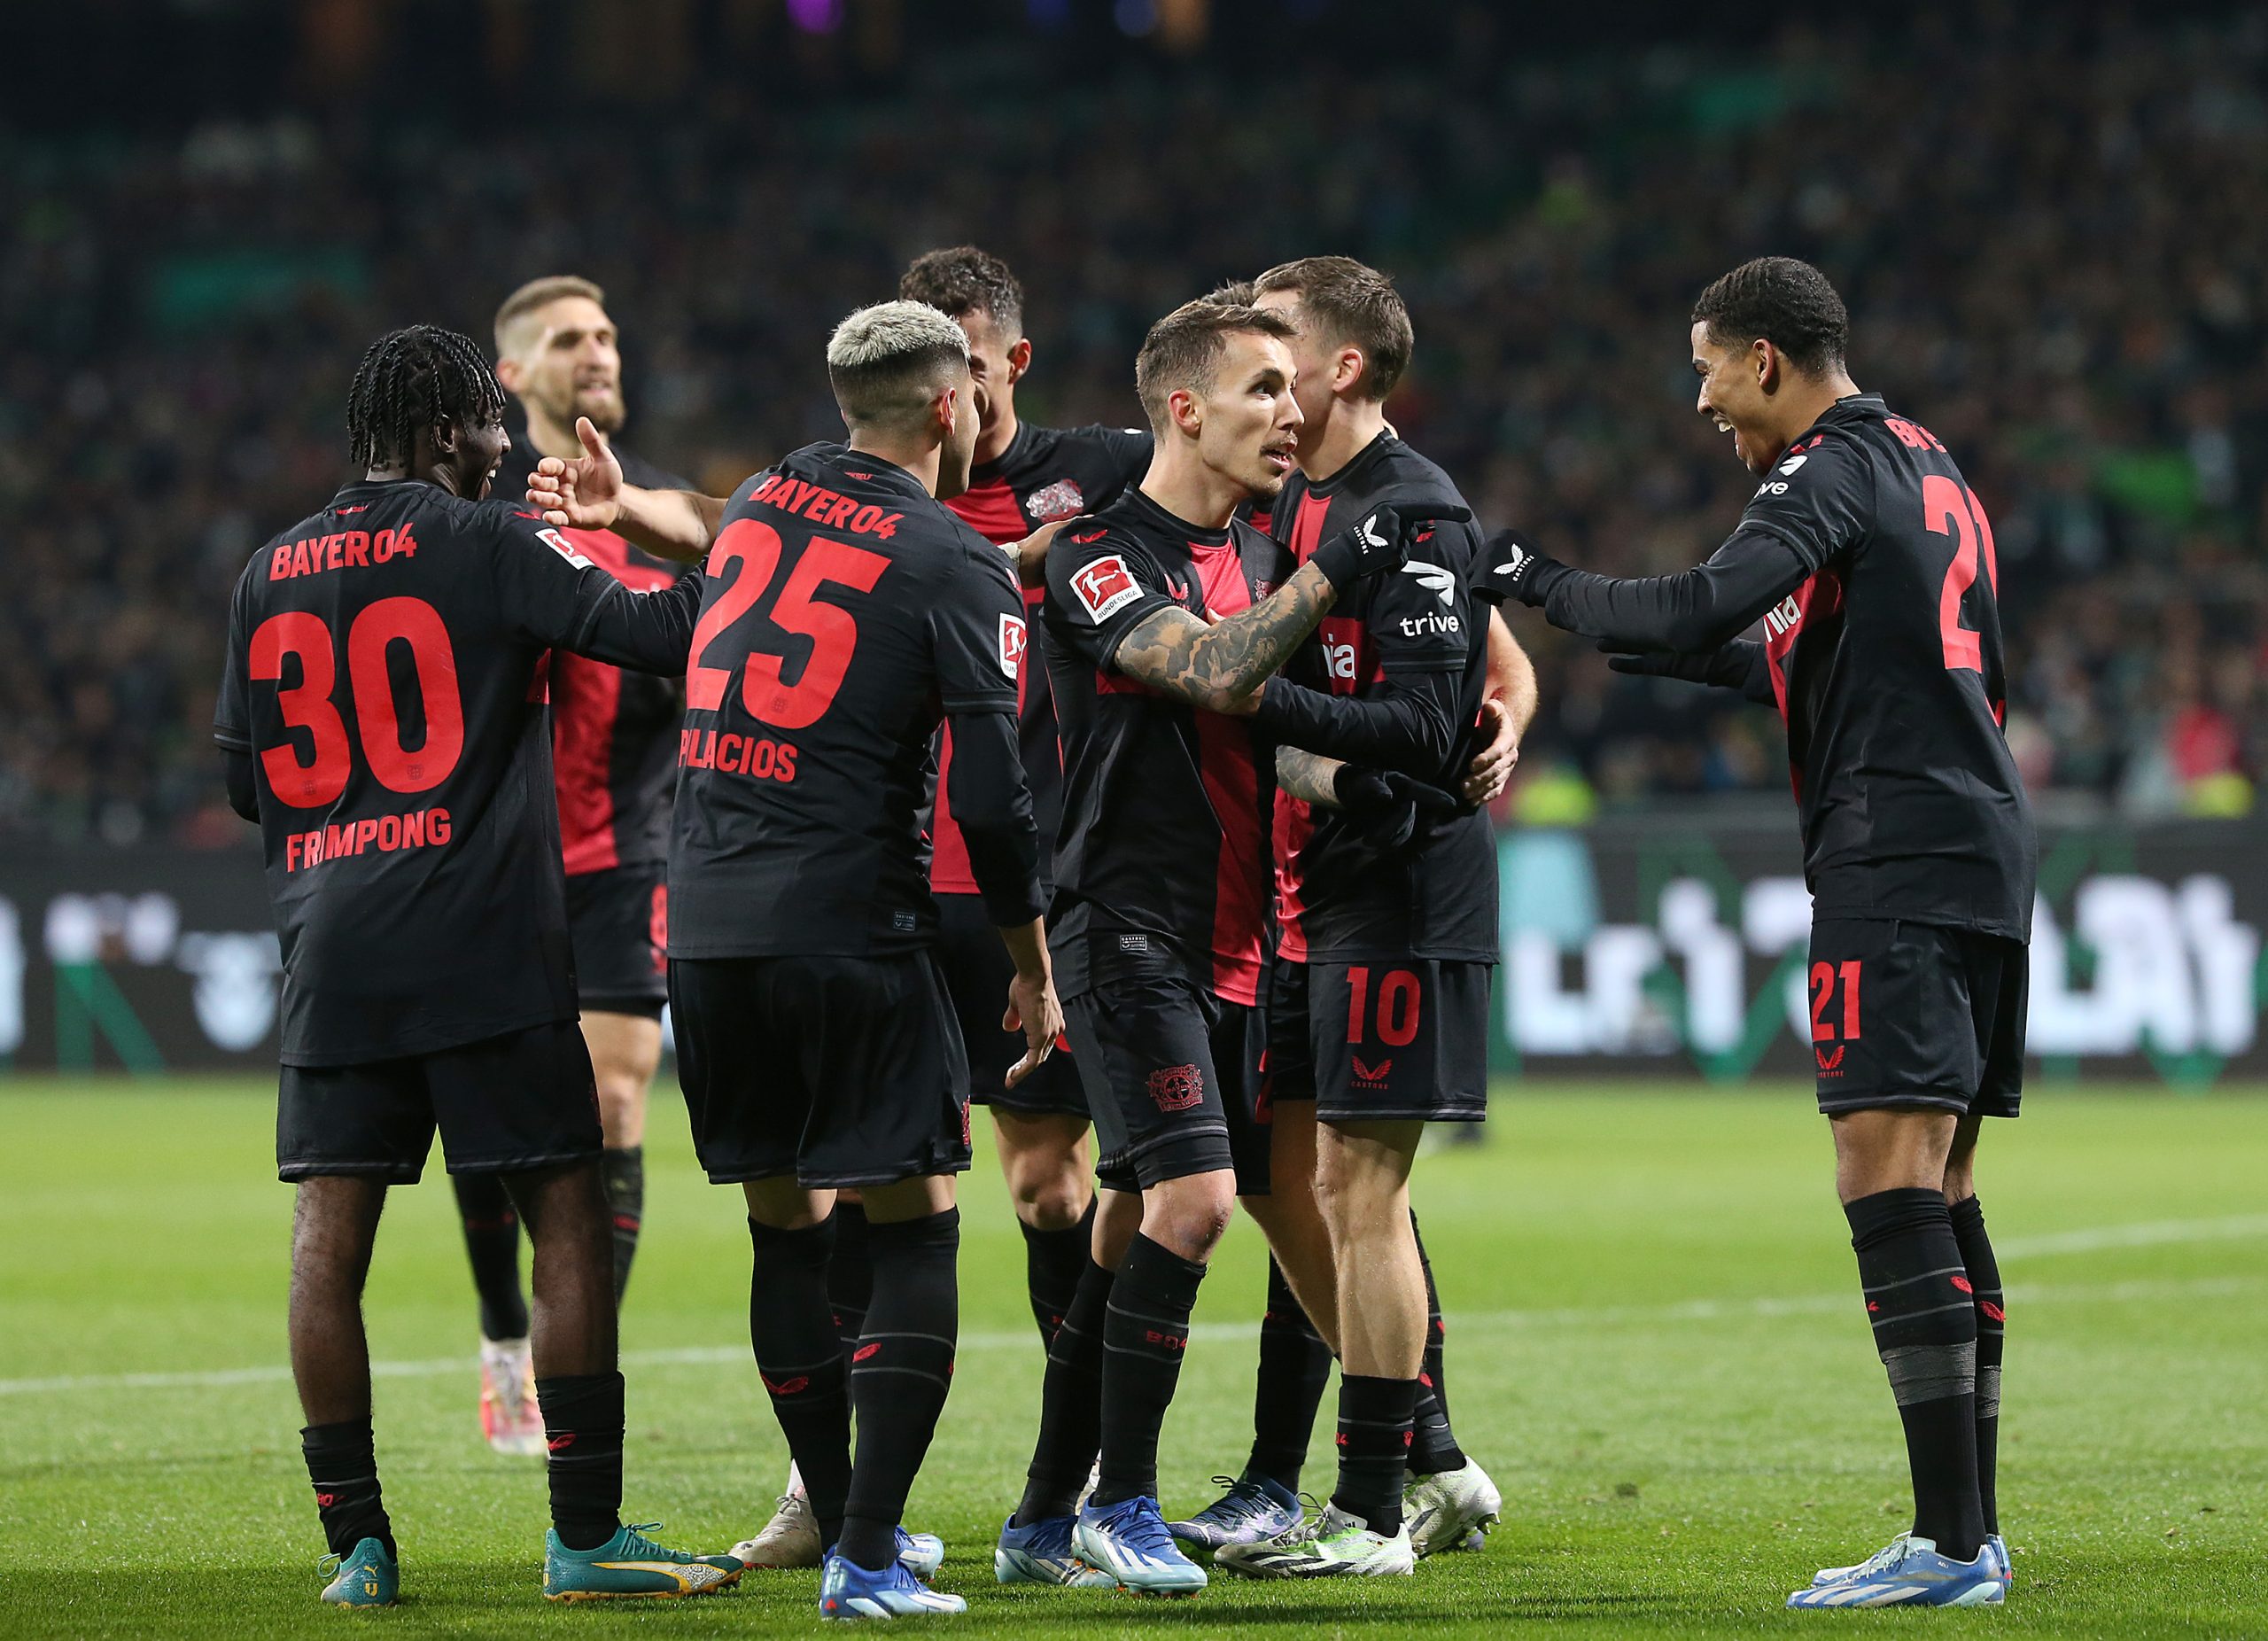 Eintracht Braunschweig - SV Werder Bremen, Matchday 1